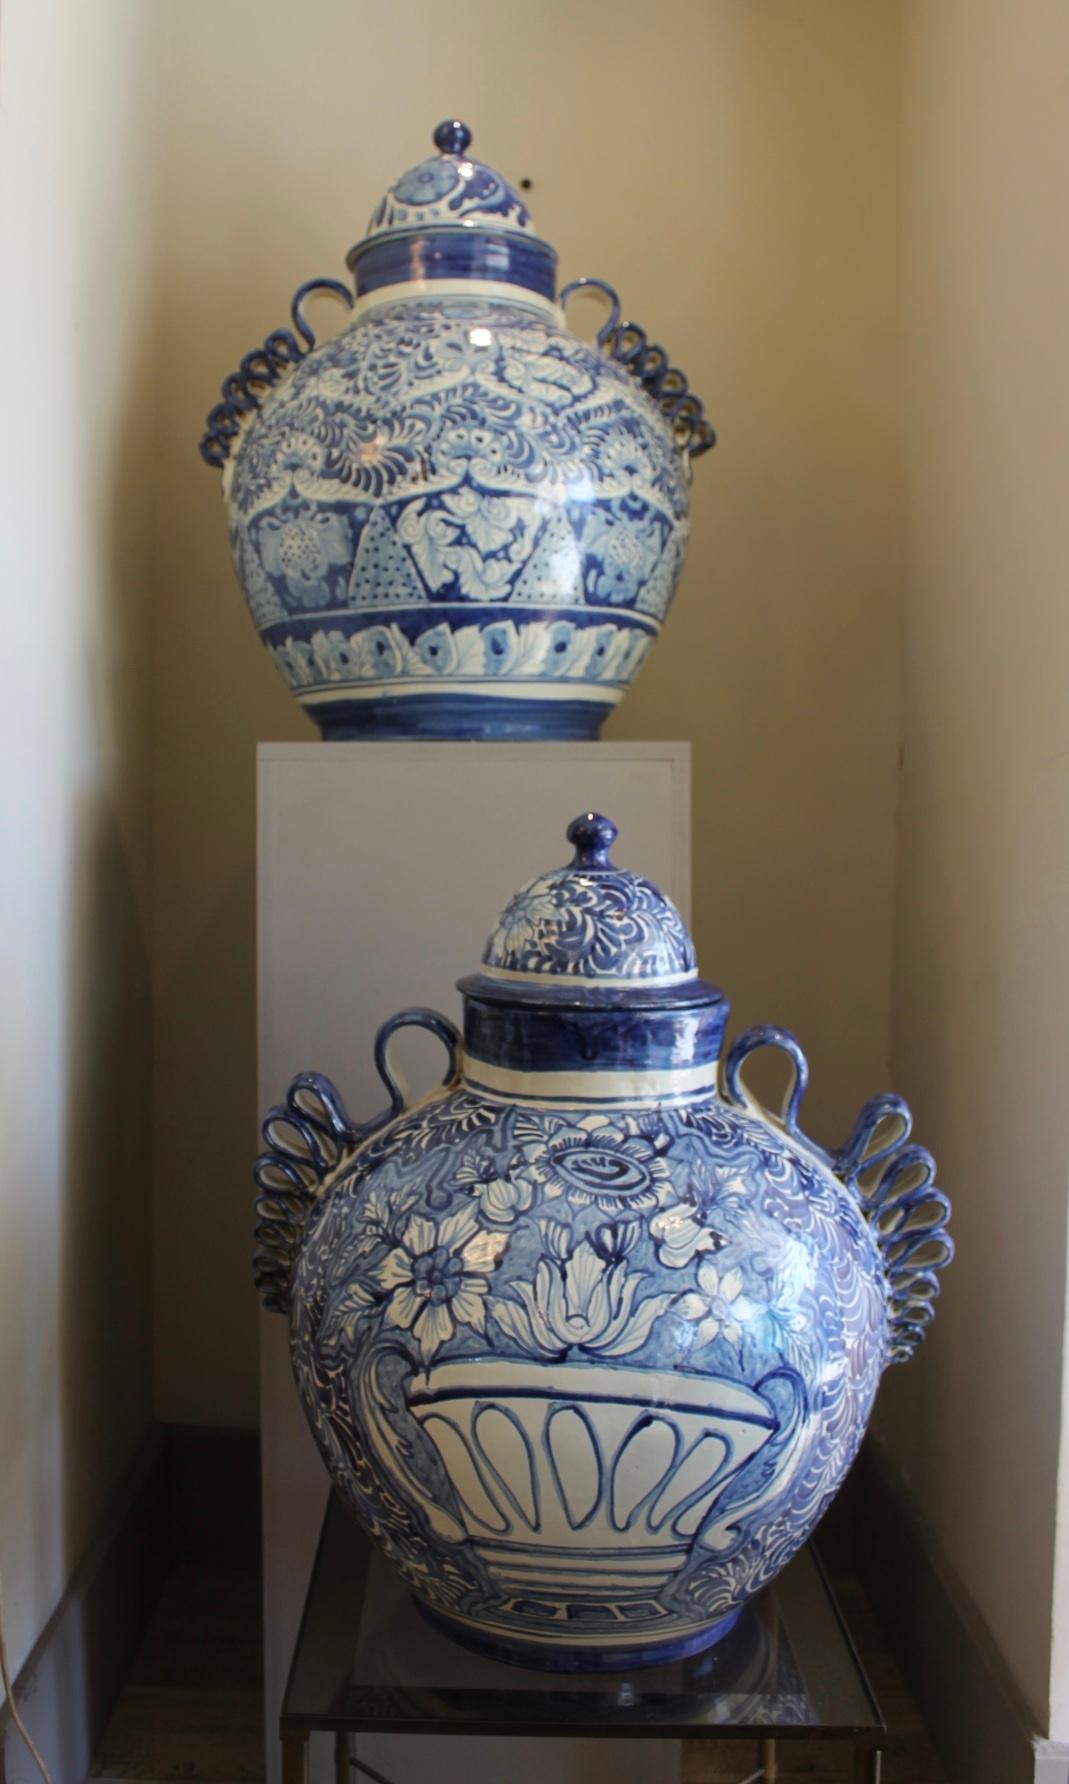 Paar blau-weiße Keramikgefäße, Mexiko, 20. Jahrhundert.
Ein Gefäß ist kleiner als das andere.
Dekoration mit Blumen und Blattwerk
Mexikanische Arbeit. Unterzeichnet Amora
Schönes Set von Gläsern, die auf einer Anrichte platziert werden können. Sehr